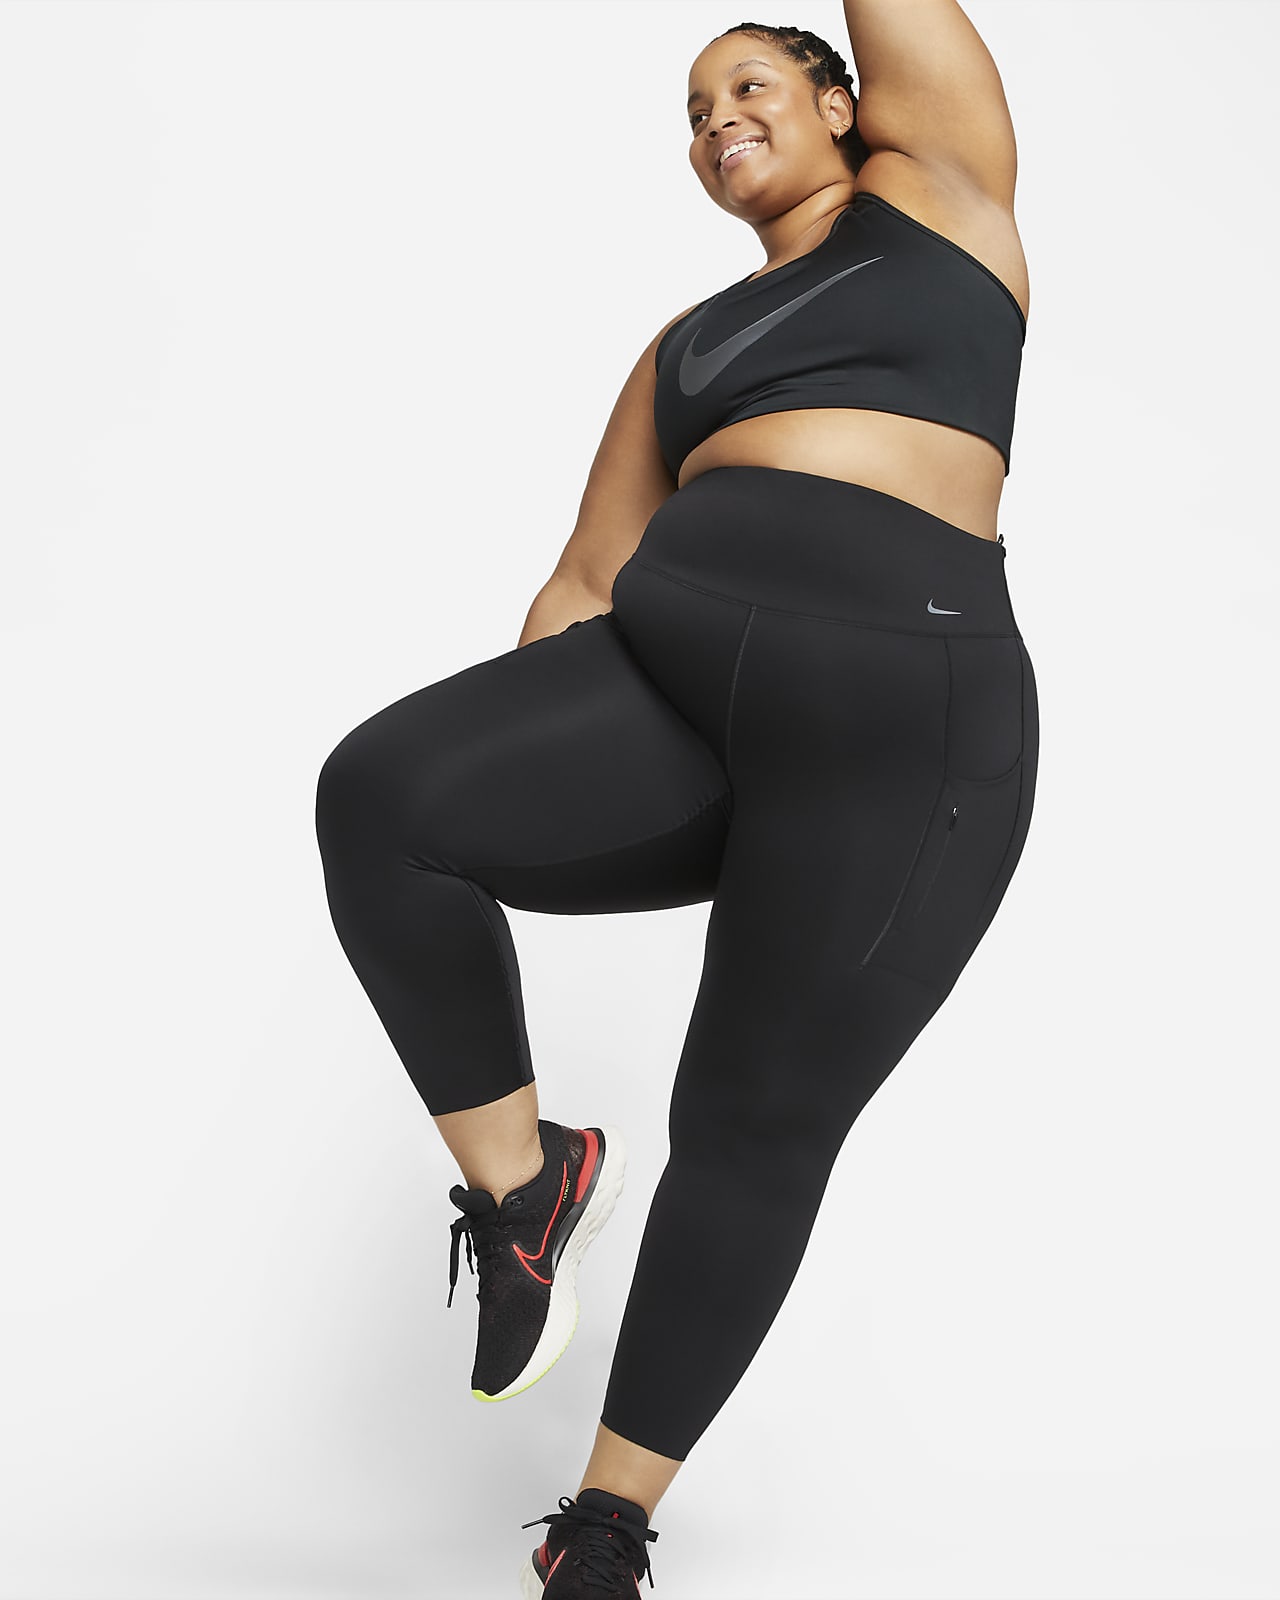 Nike Go leggings i 7/8 lengde med fast støtte, høyt liv og lommer til dame (Plus Size)